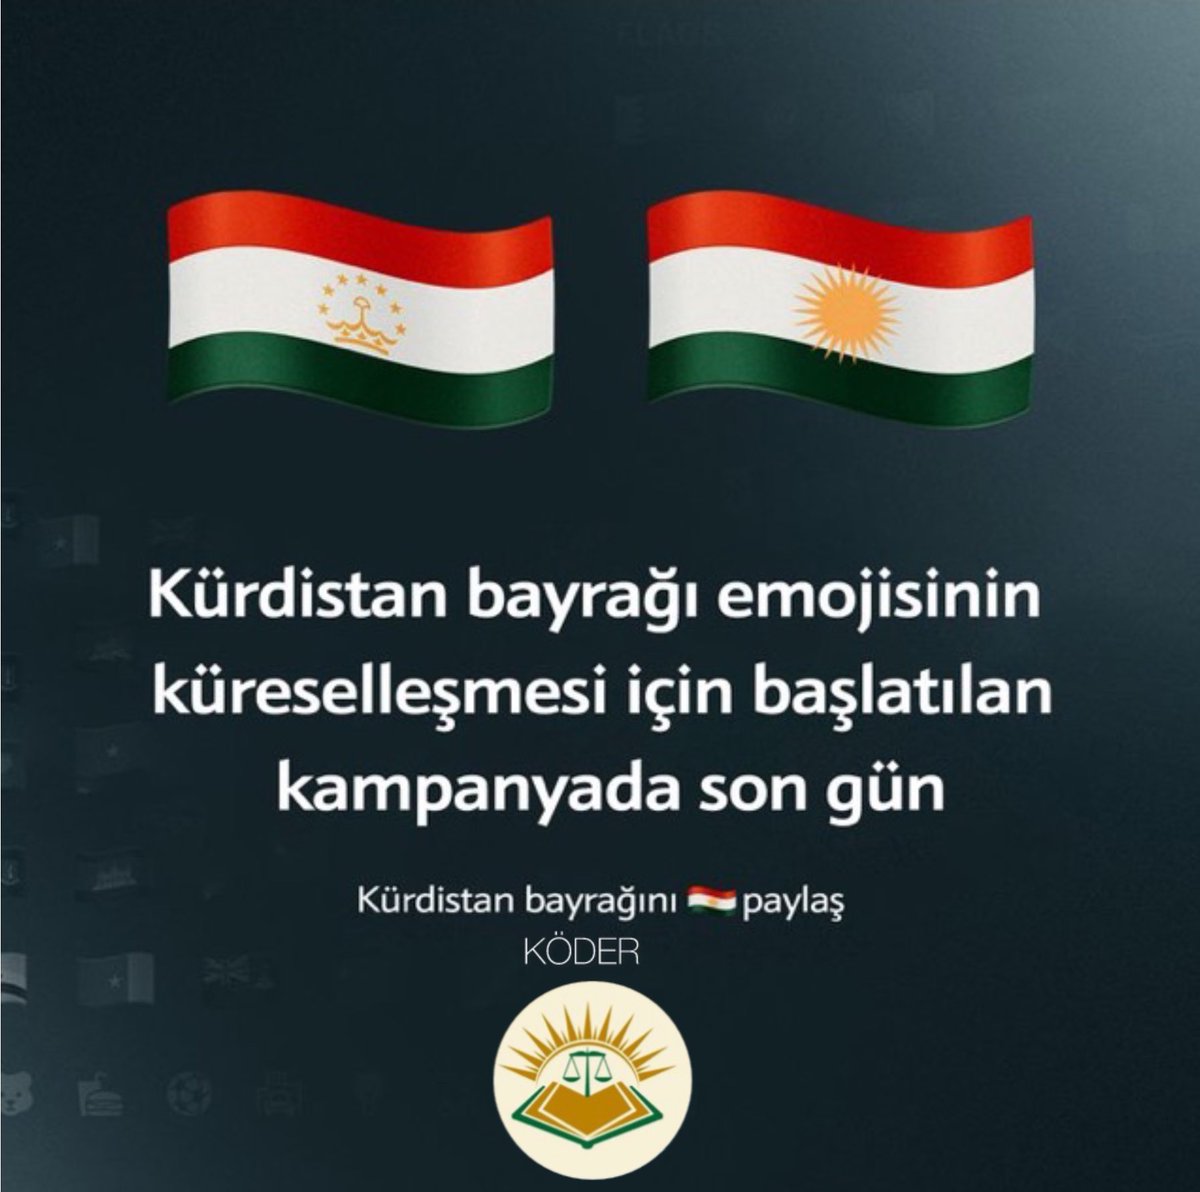 Halepçeli gencin  klavye sistemlerinde Kürdistan bayrağı emojisinin eklenmesi için başlattığı kampanyada bugün son gün. Bugün sosyal medyada Tacikistan bayrağı paylaşılarak kampanyaya destek verebilirsiniz